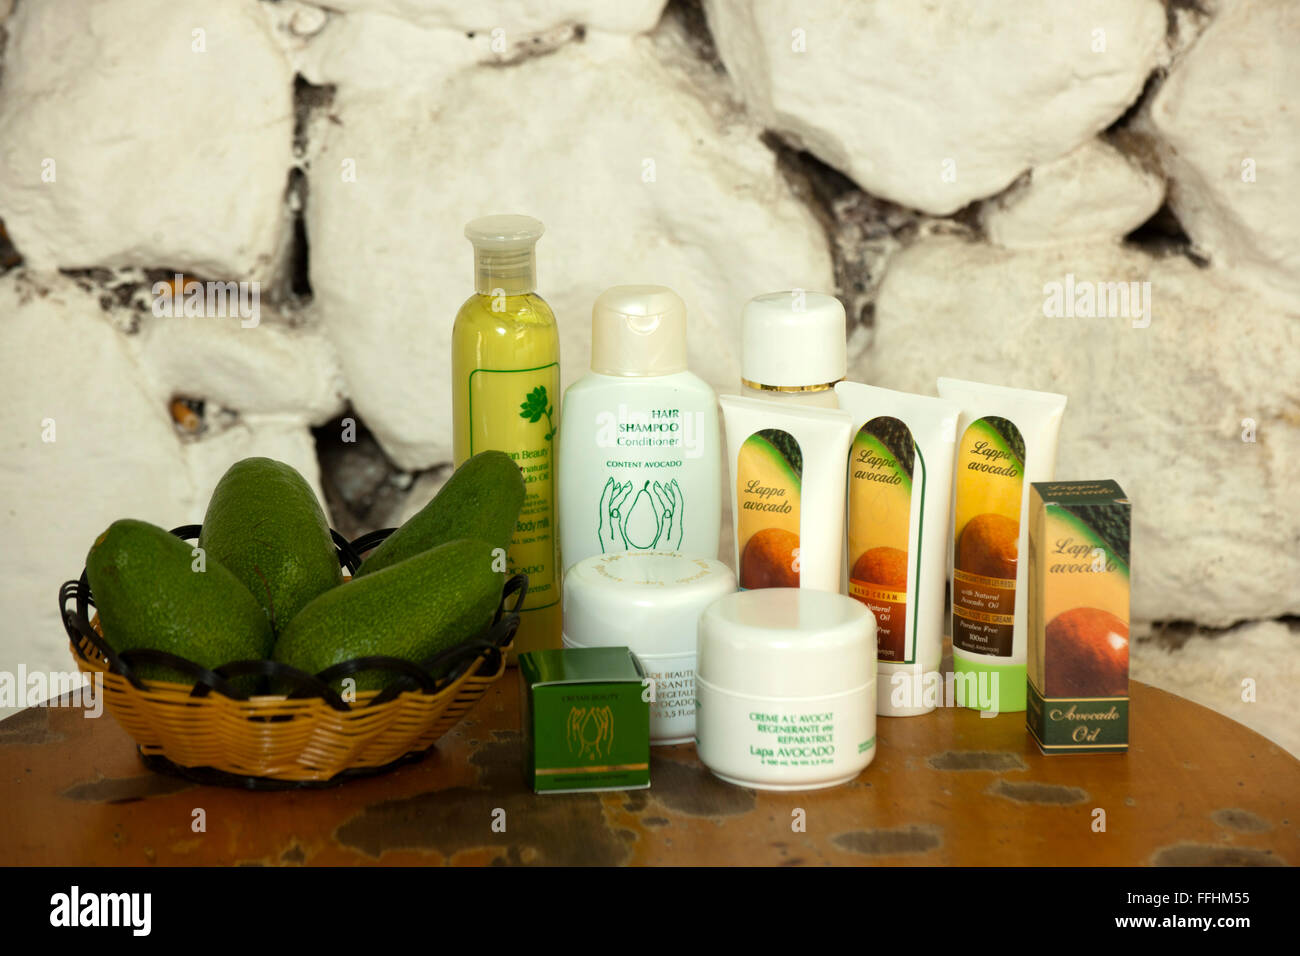 Griechenland, Kreta, Argiroupolis, Lappa Avocado verkauft Kosmetikprodukte aus Avocado die selbst angebaut werden. Stock Photo